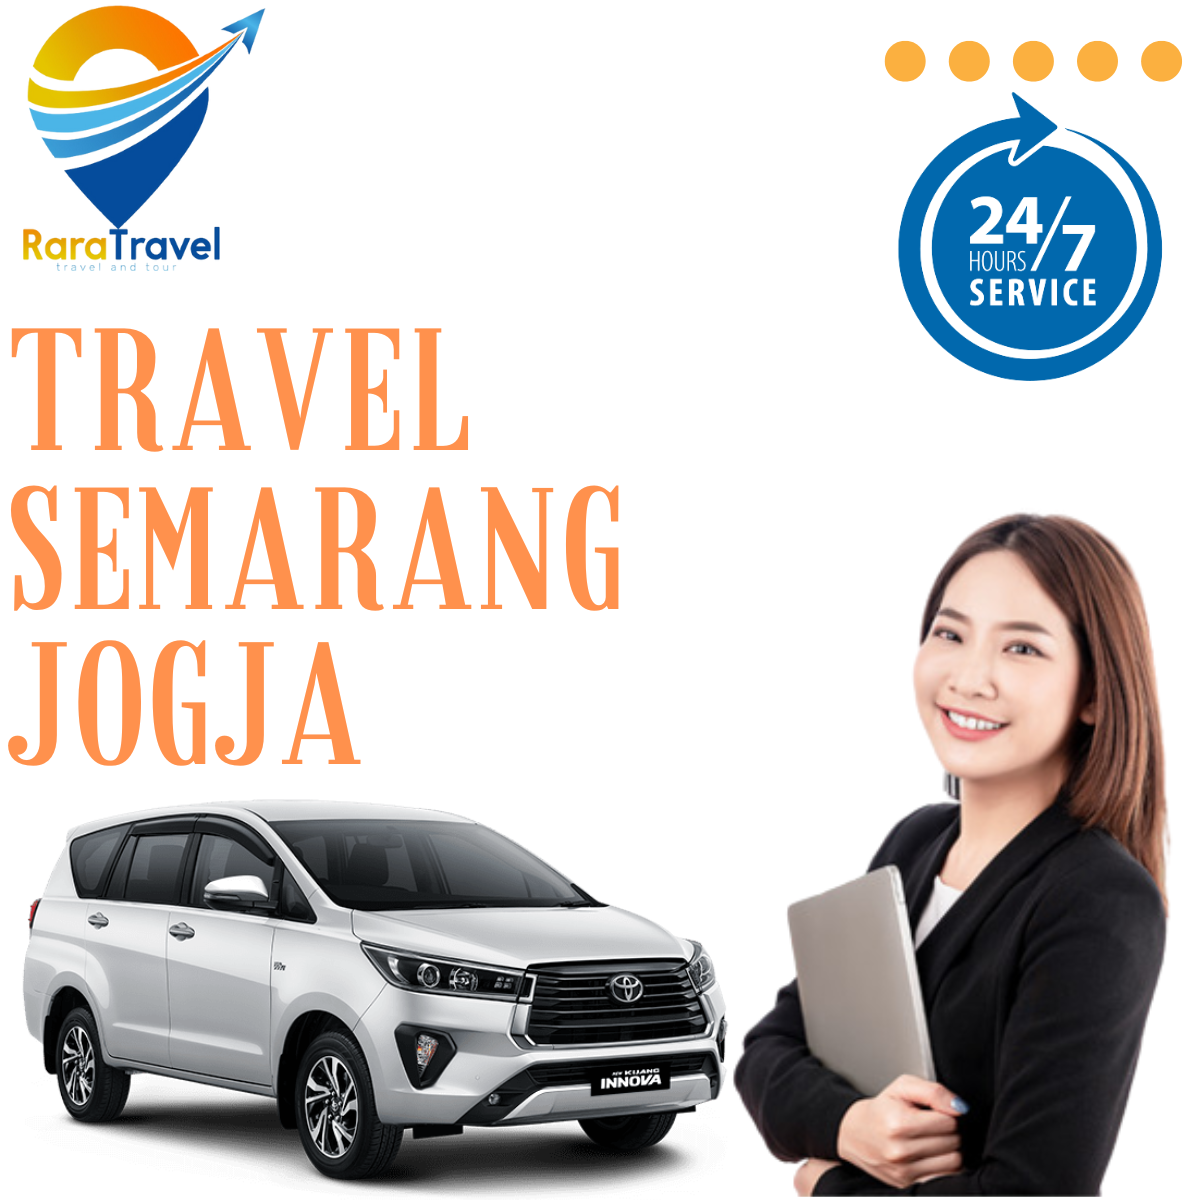 Travel Semarang Jogja: Harga Tiket Murah dan Layanan PP 24 Jam